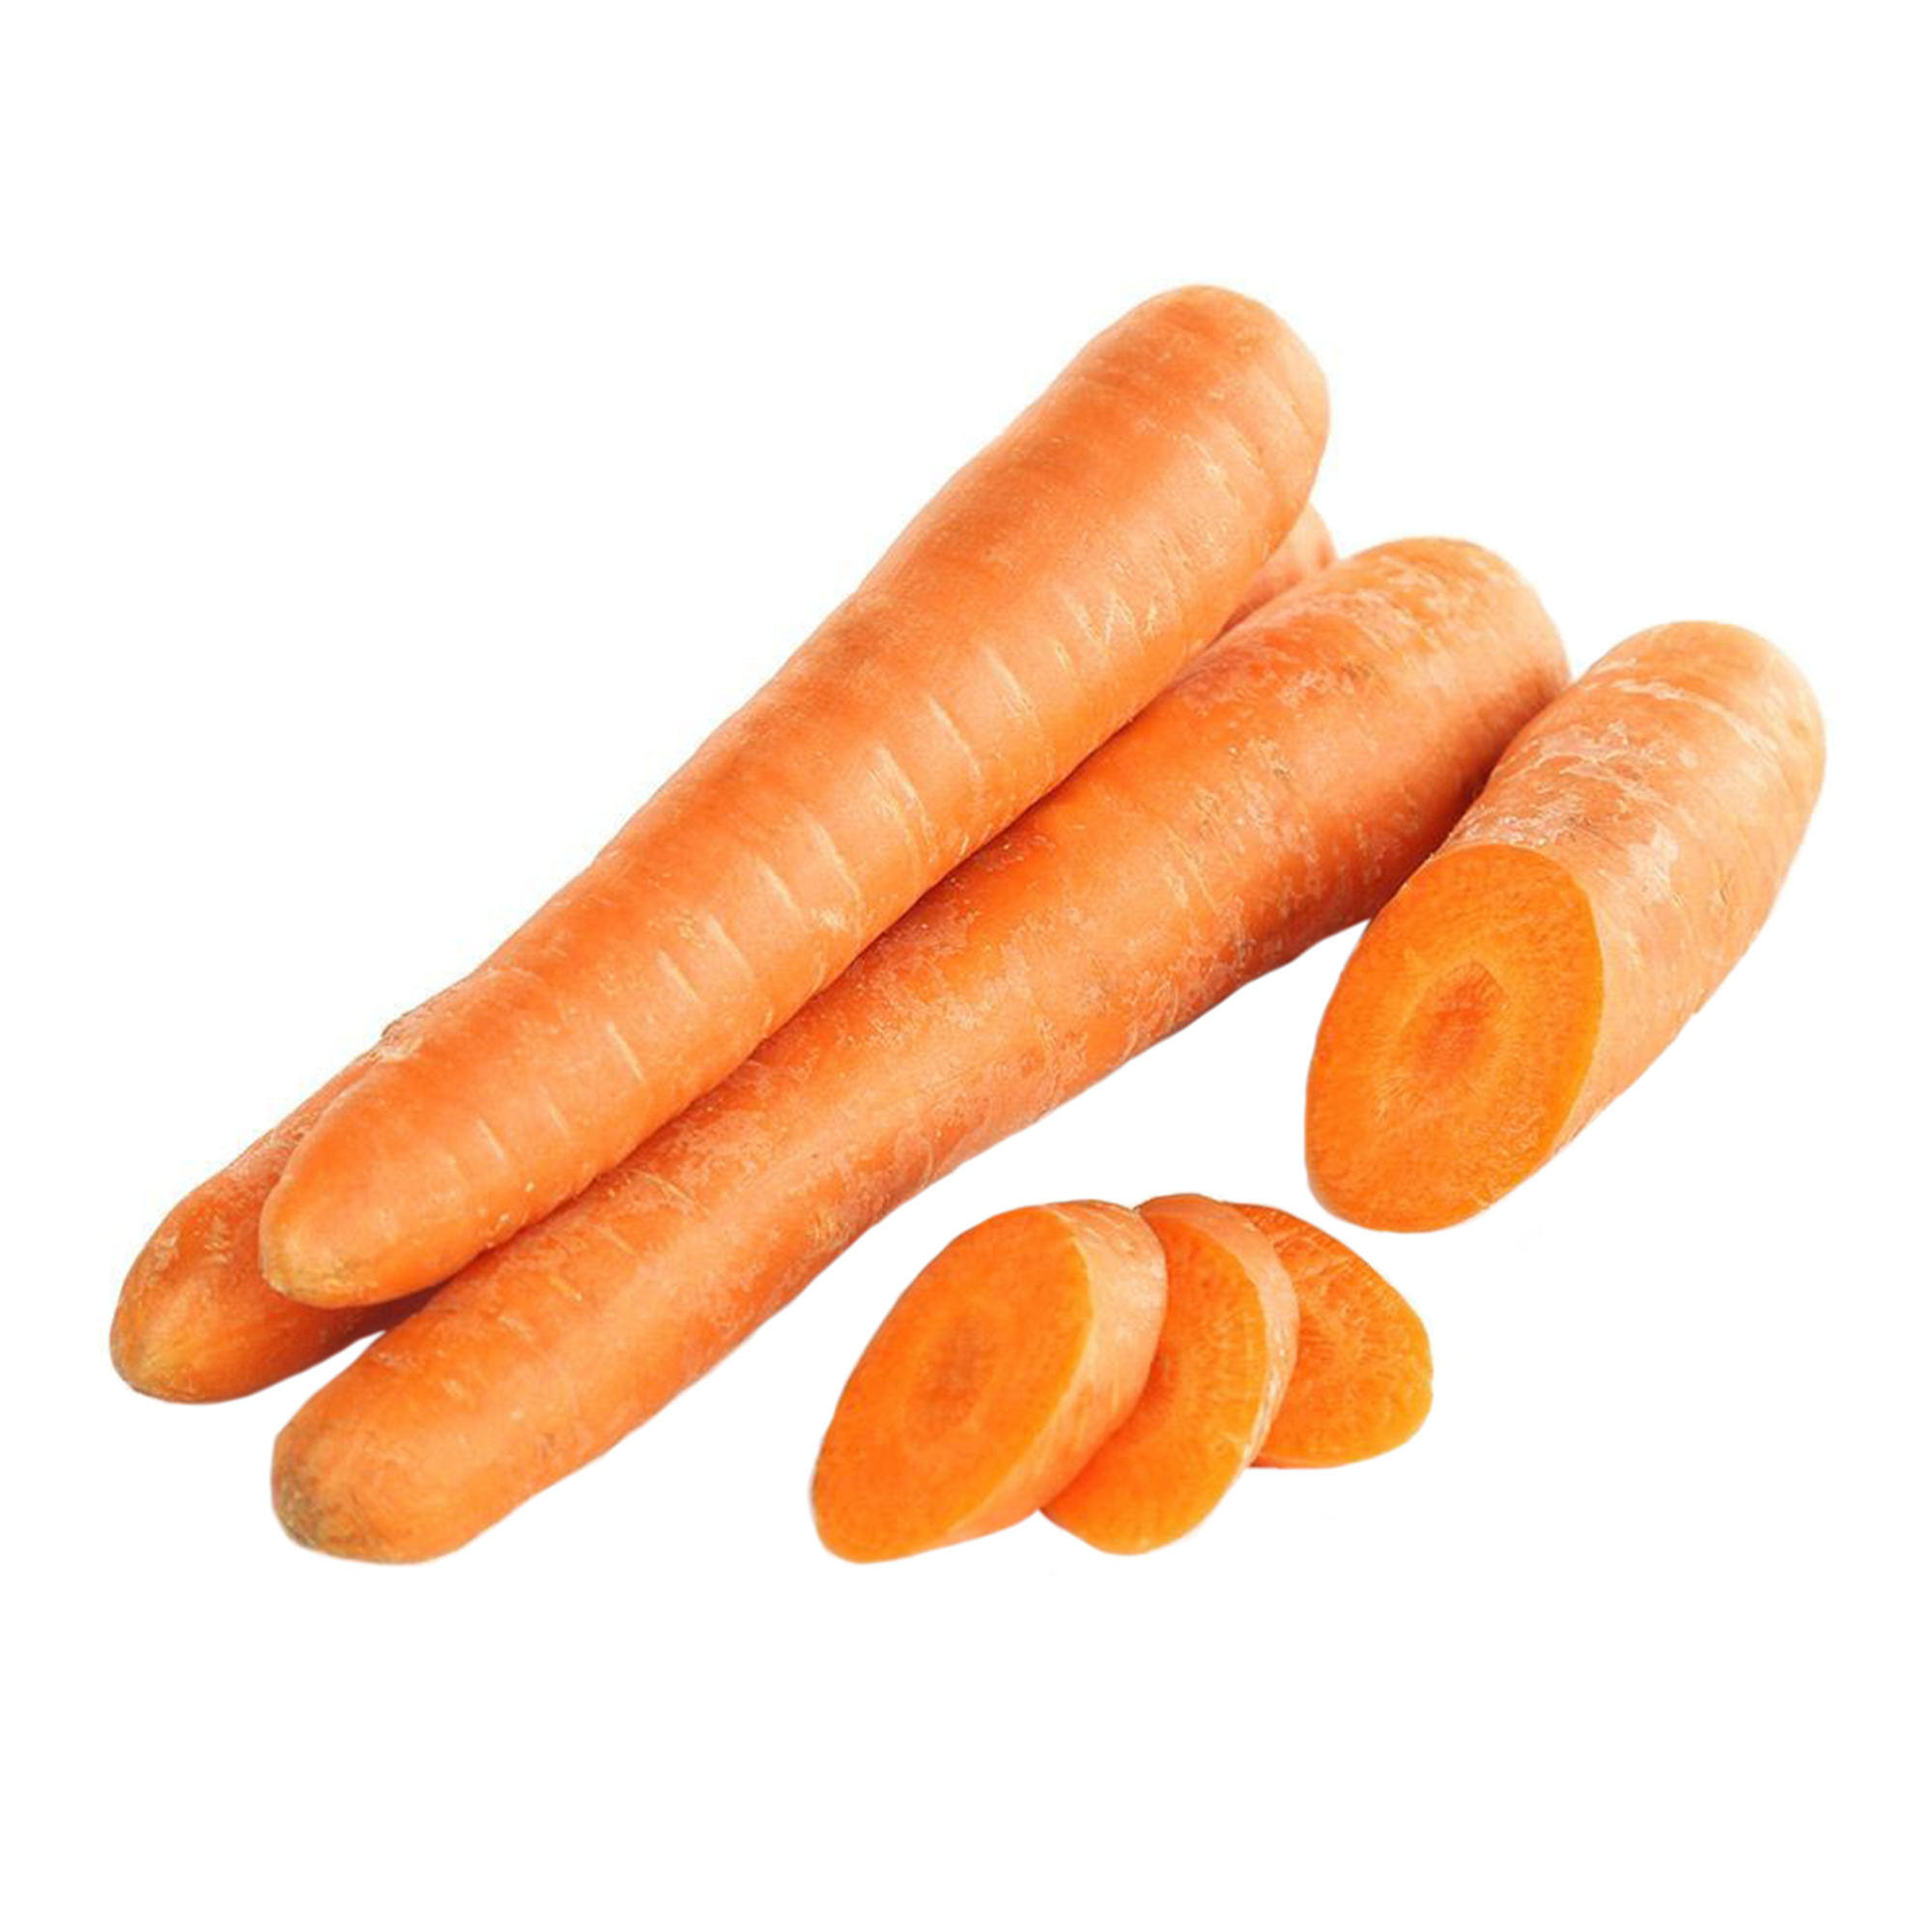 Морковь мытая в пакете 1 кг